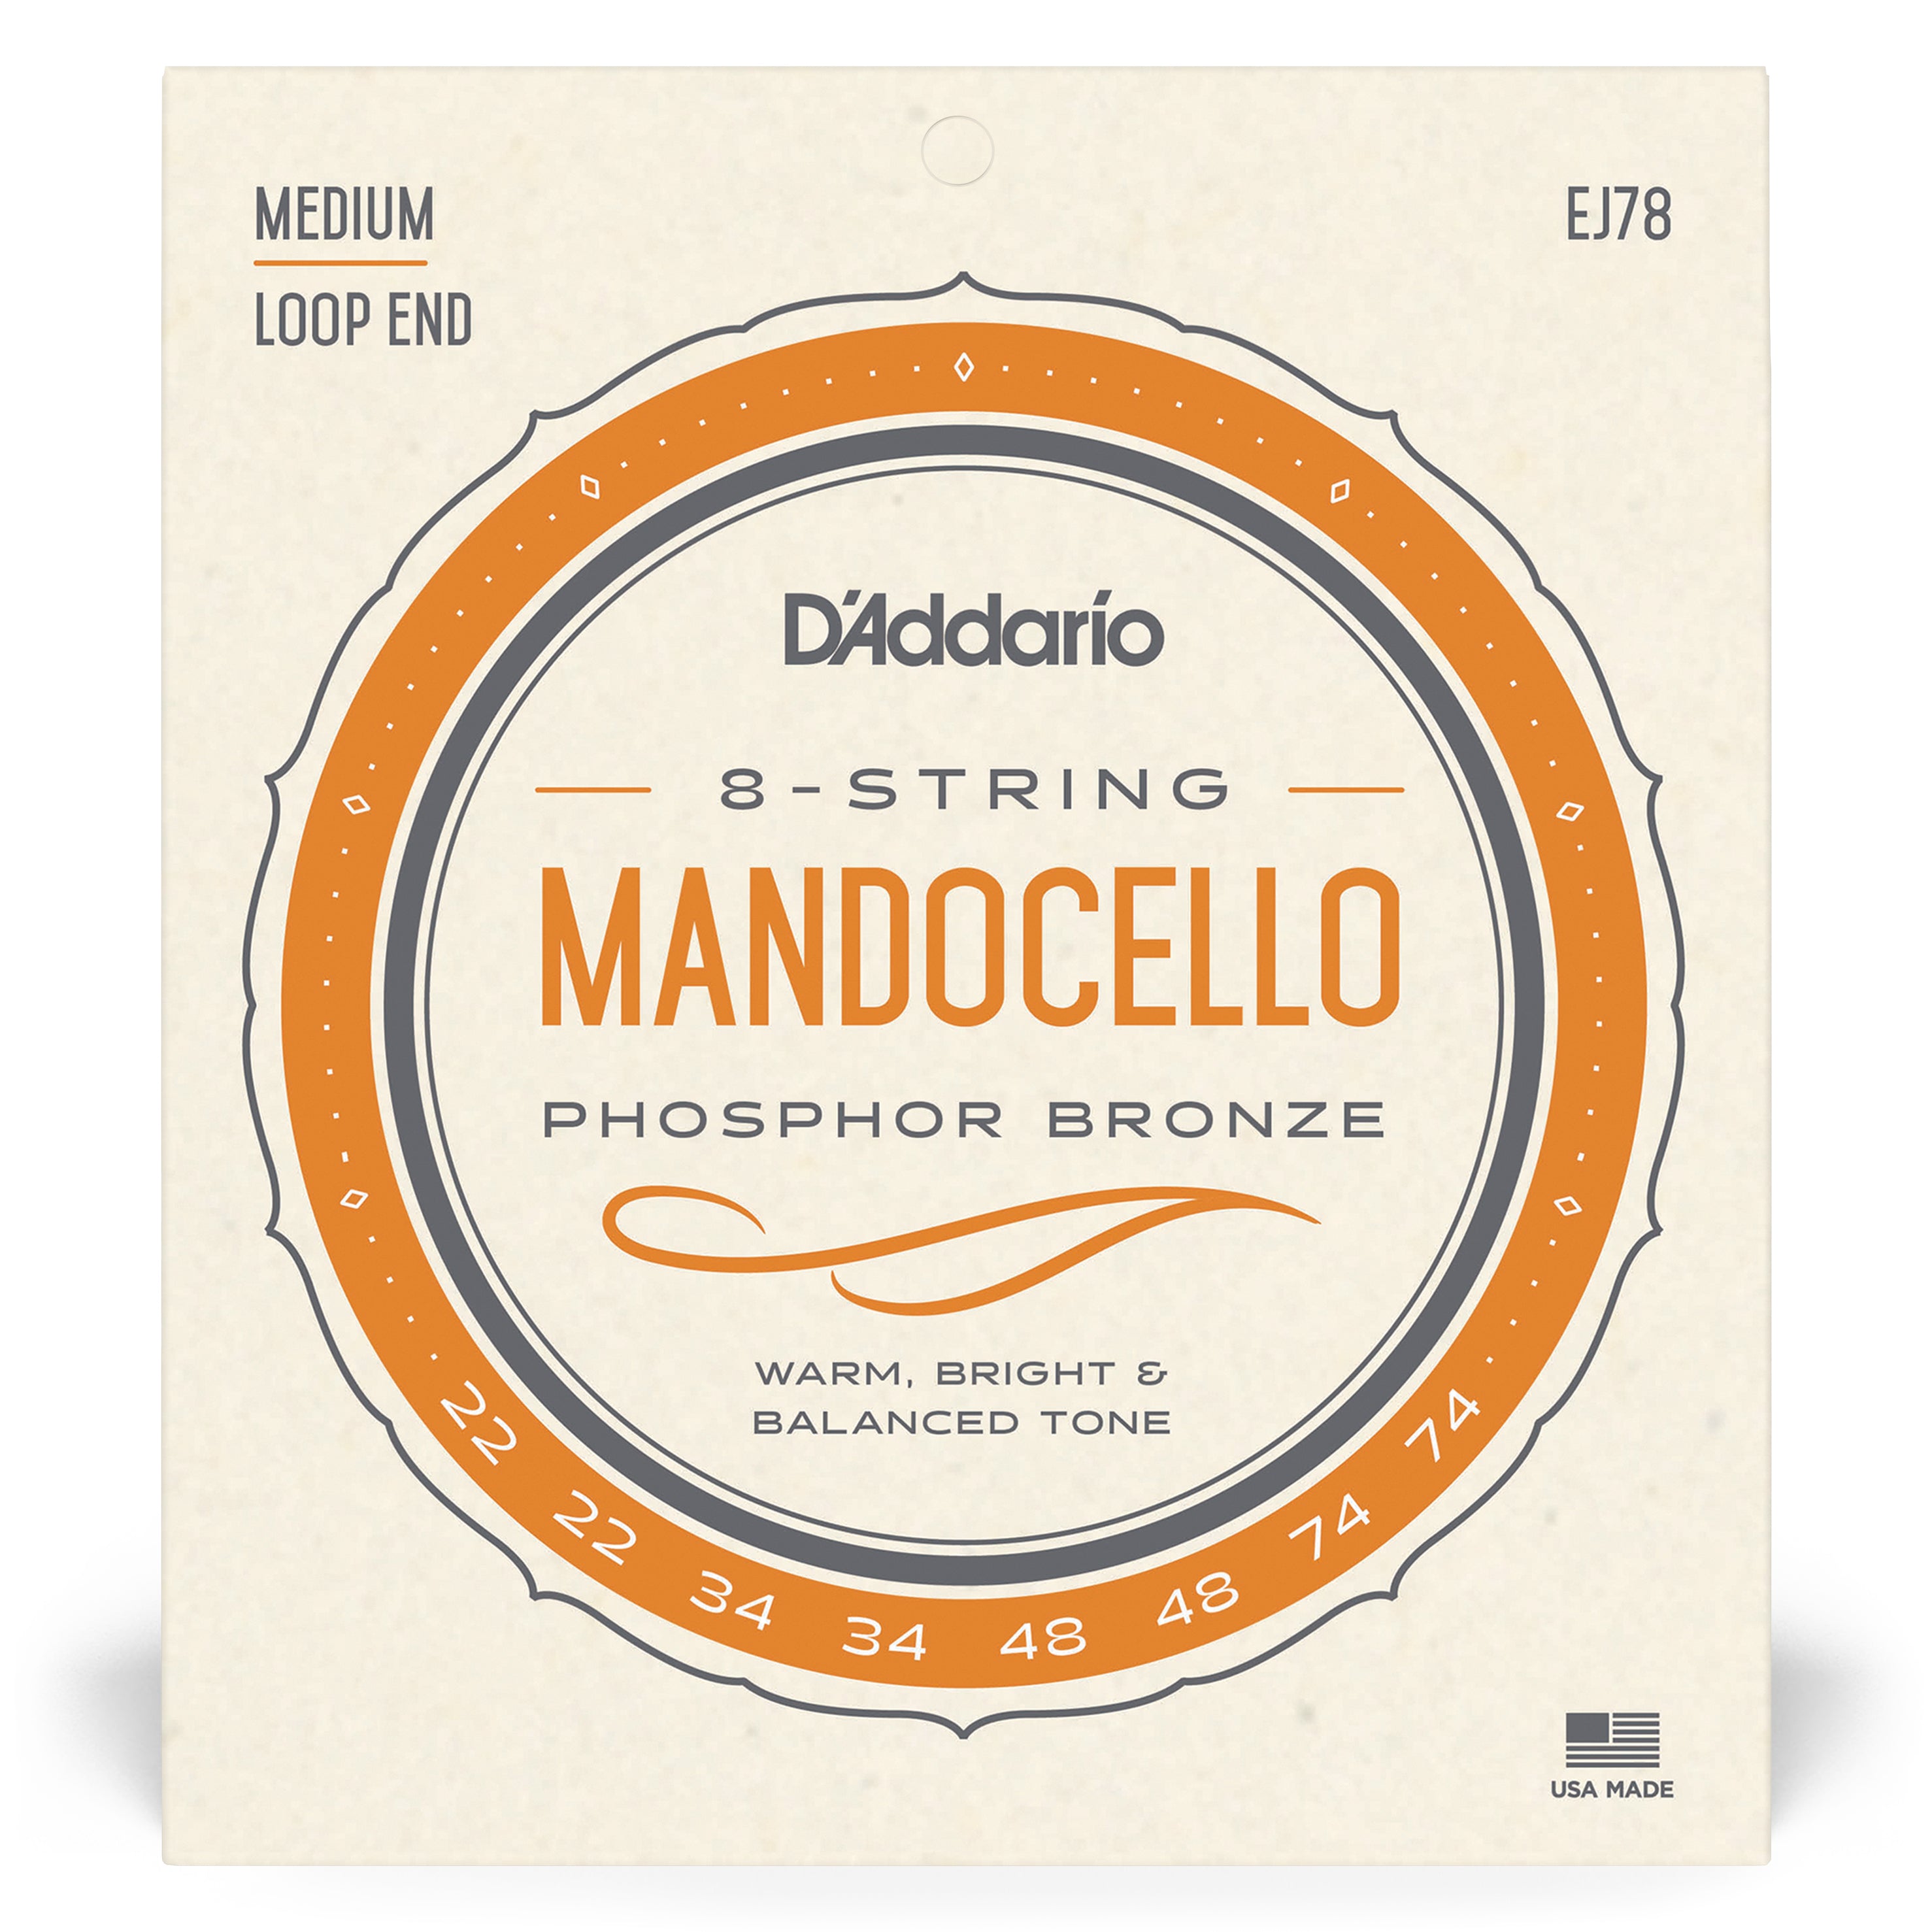 D'Addario EJ78 Mandocello Phosphor Bronze Wound Strings 22-74 Gauge